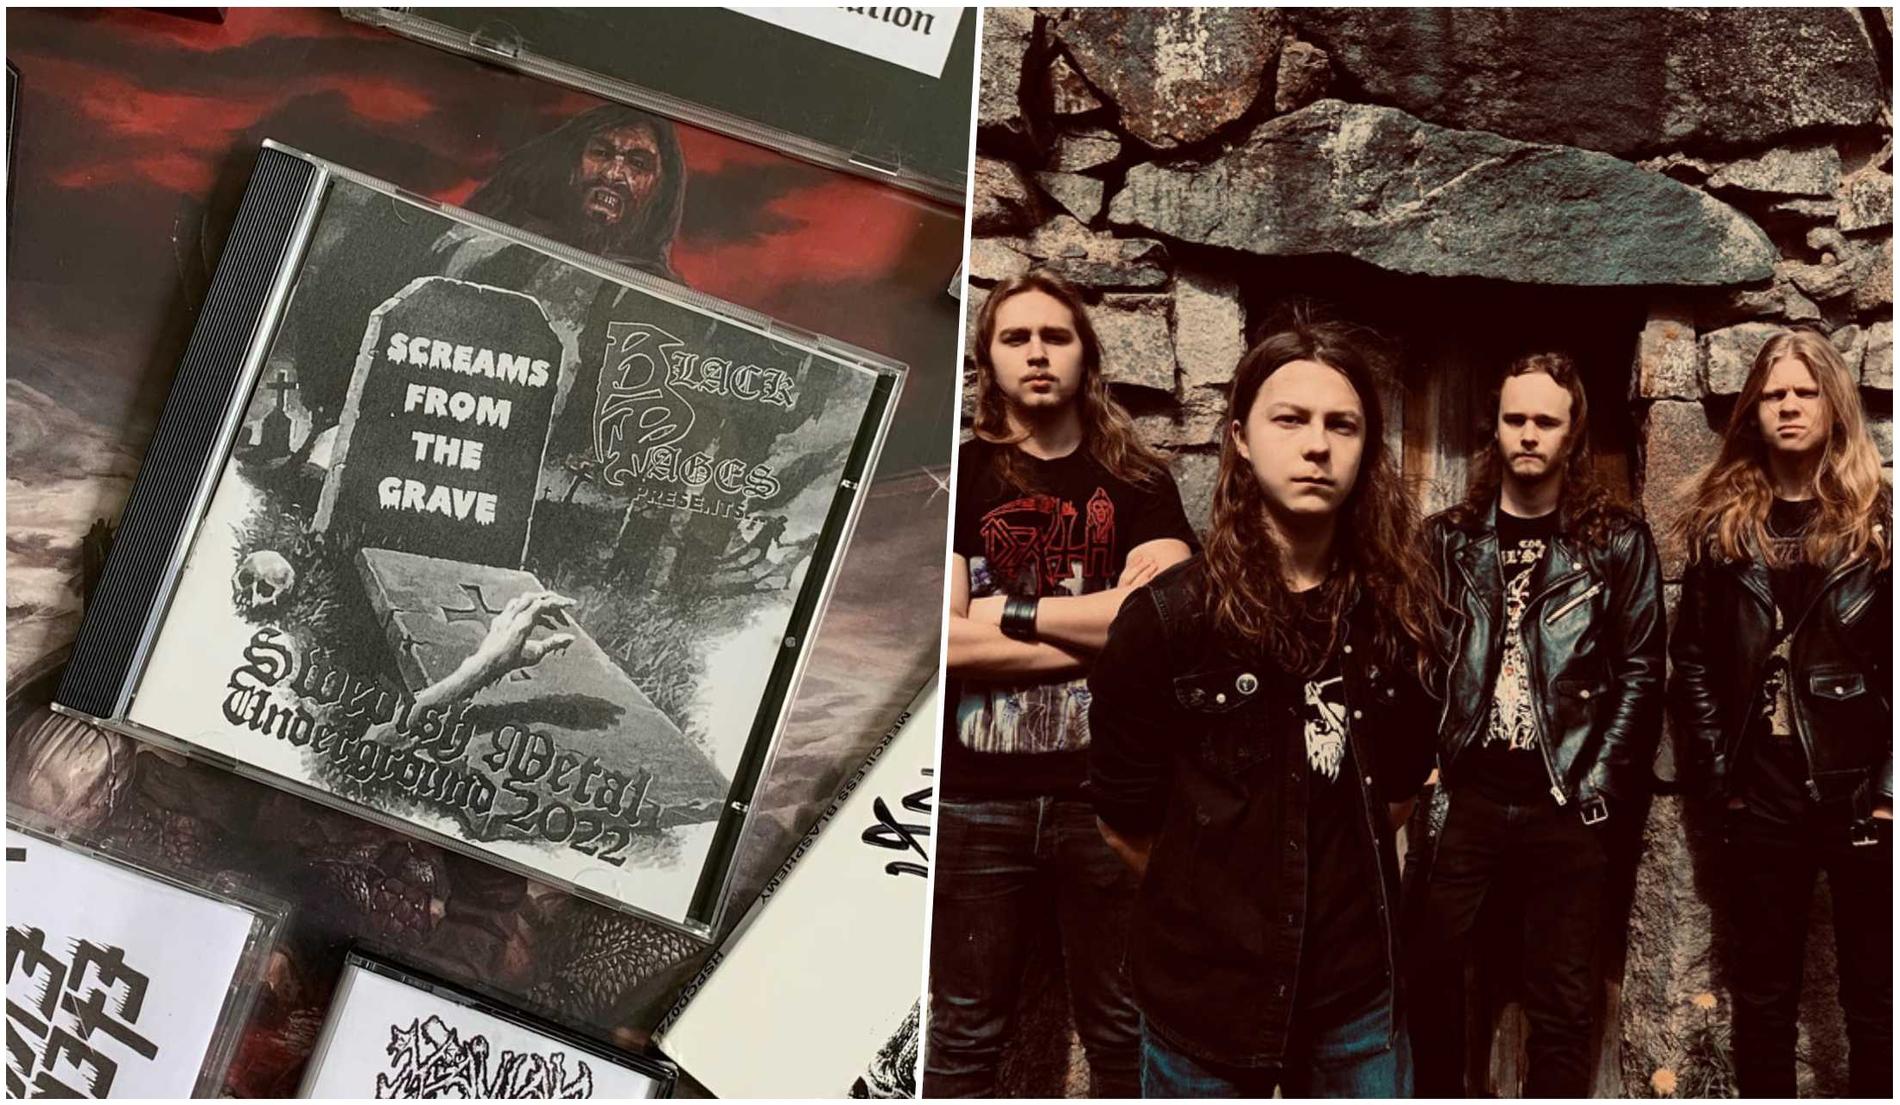 Fanzinet Black Pages är aktuella med albumet ”Screams from the grave” som  tolv unga metalband från den svenska undergroundscenen, däribland Sarcator.